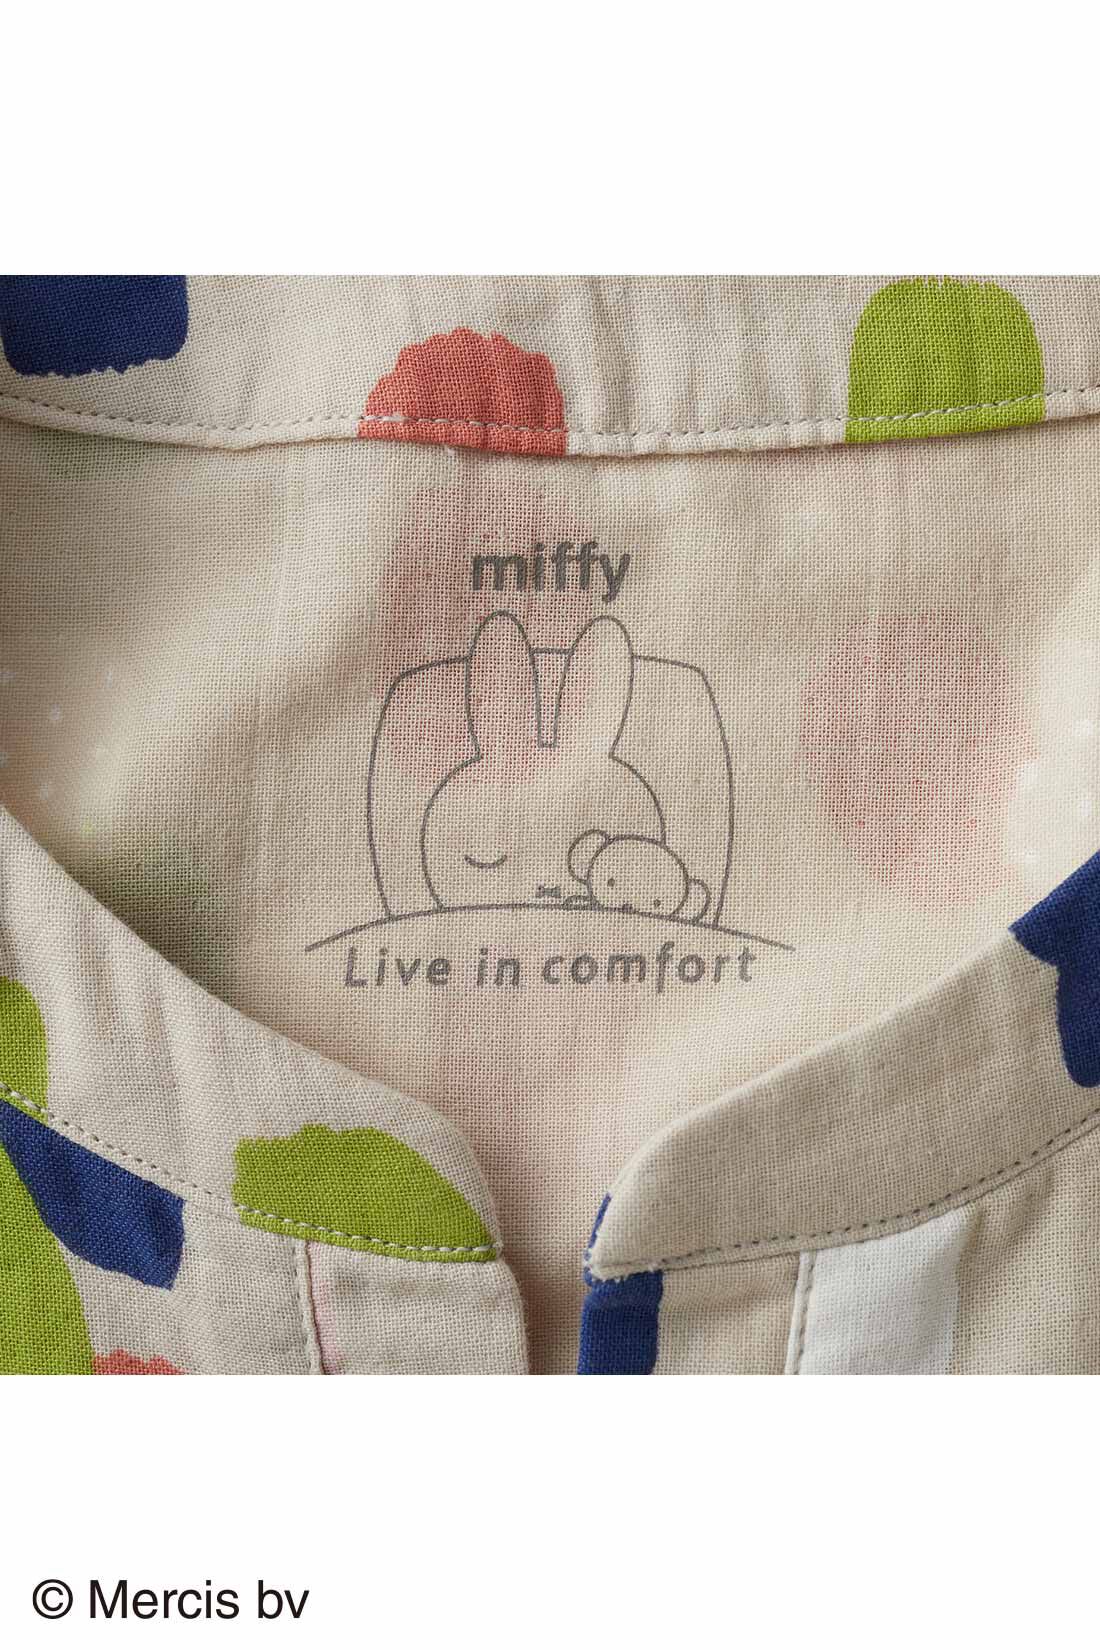 Live in  comfort|リブ イン コンフォート　水彩画タッチのミッフィーがかわいい ふわふわダブルガーゼのペイント柄ワンピースパジャマ|背裏にも、タグの代わりにミッフィーが隠れています。